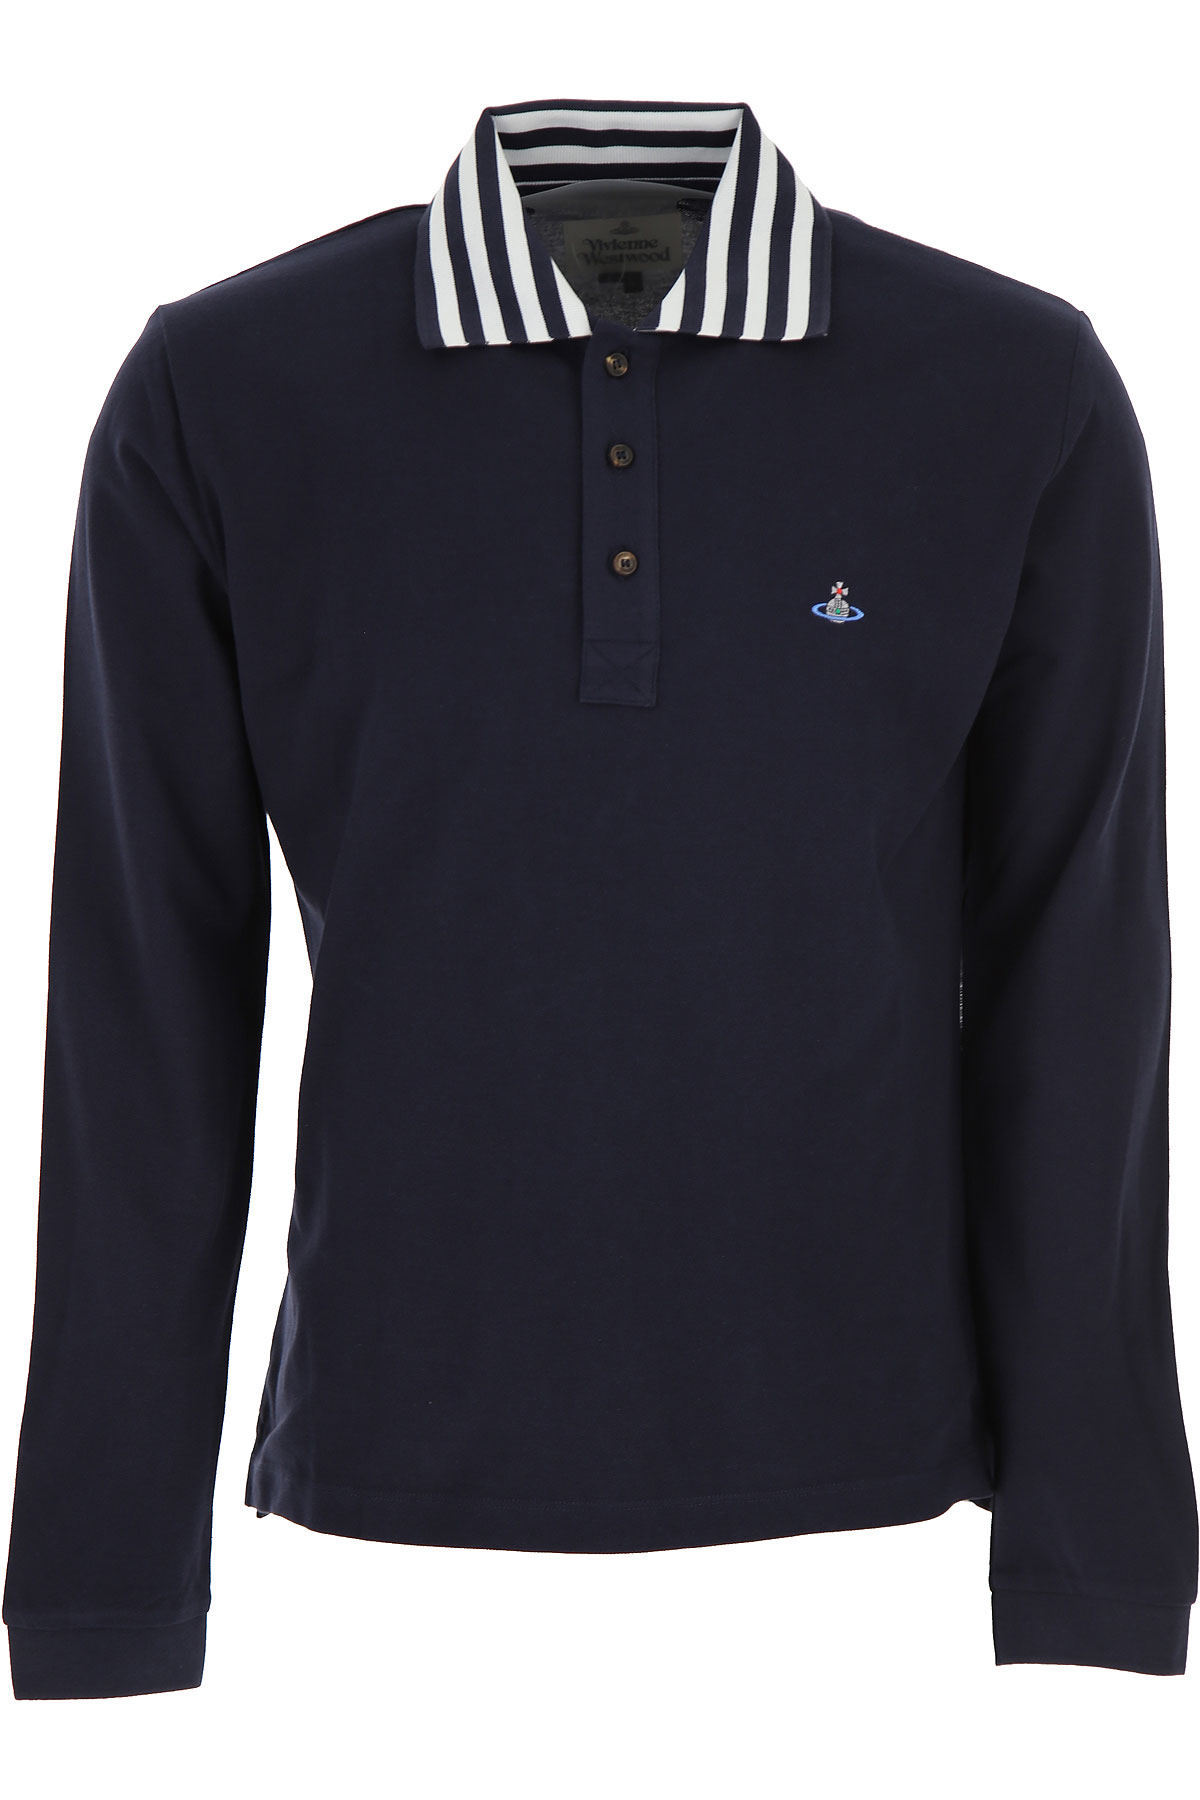 Vivienne Westwood Polohemd für Herren, Polo-Hemd, Polo-Shirt Günstig im Sale, Marineblau, Baumwolle, 2017, L S